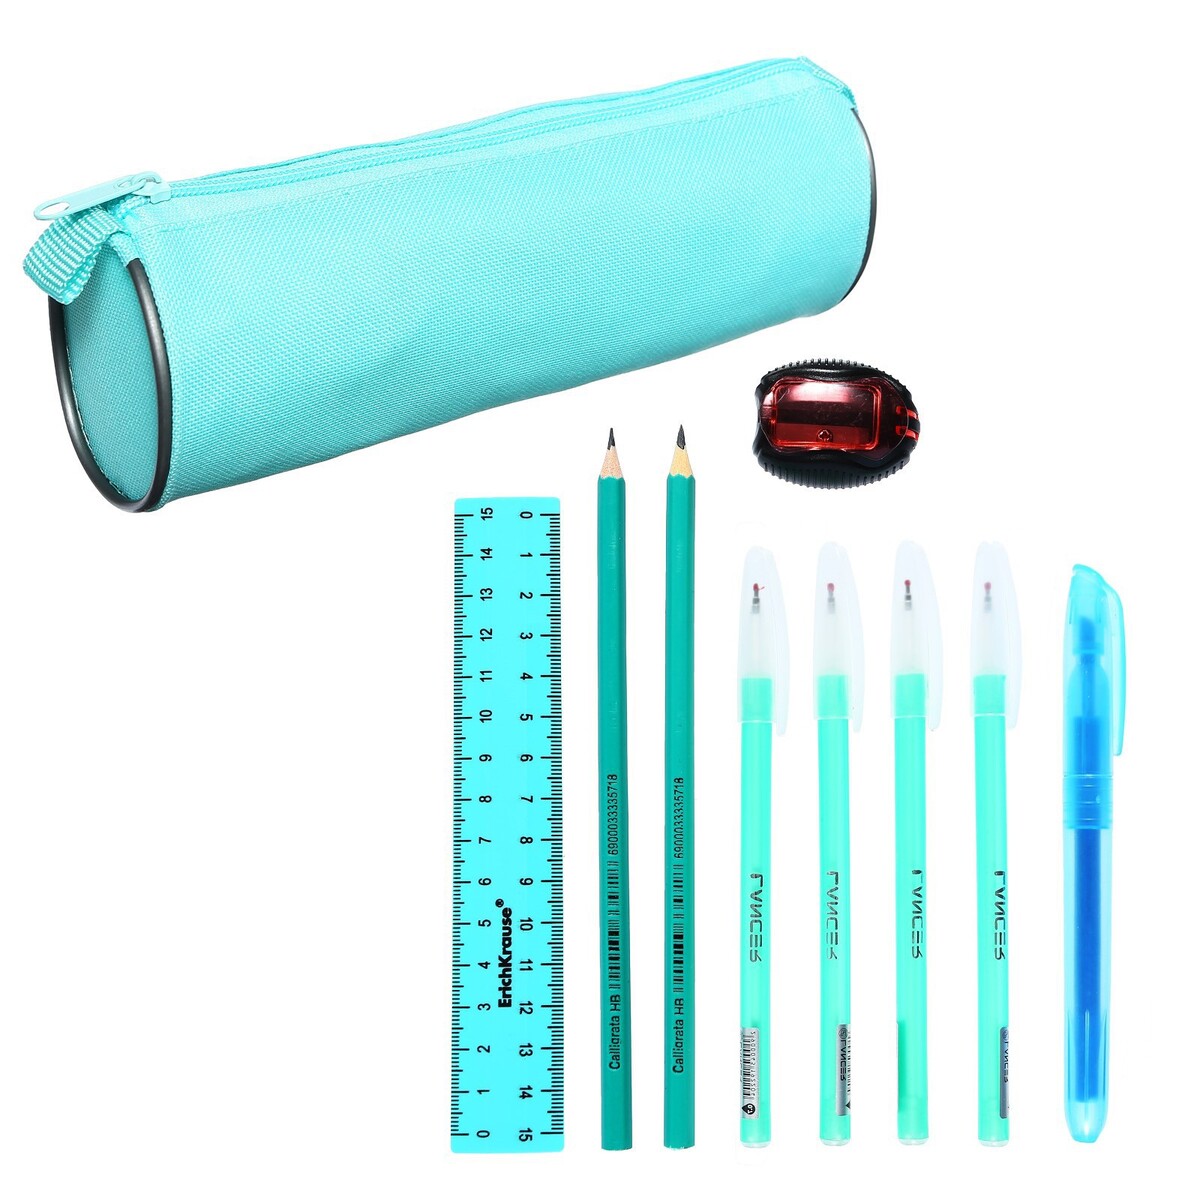 Набор канцелярский 10 предметов (пенал-тубус 65 х 210 мм, ручки 4 штуки цвет синий , линейка 15 см, точилка, карандаш 2 штуки, текстовыделитель), бирюзовый набор канцелярских принадлежностей в стакане 12 предметов